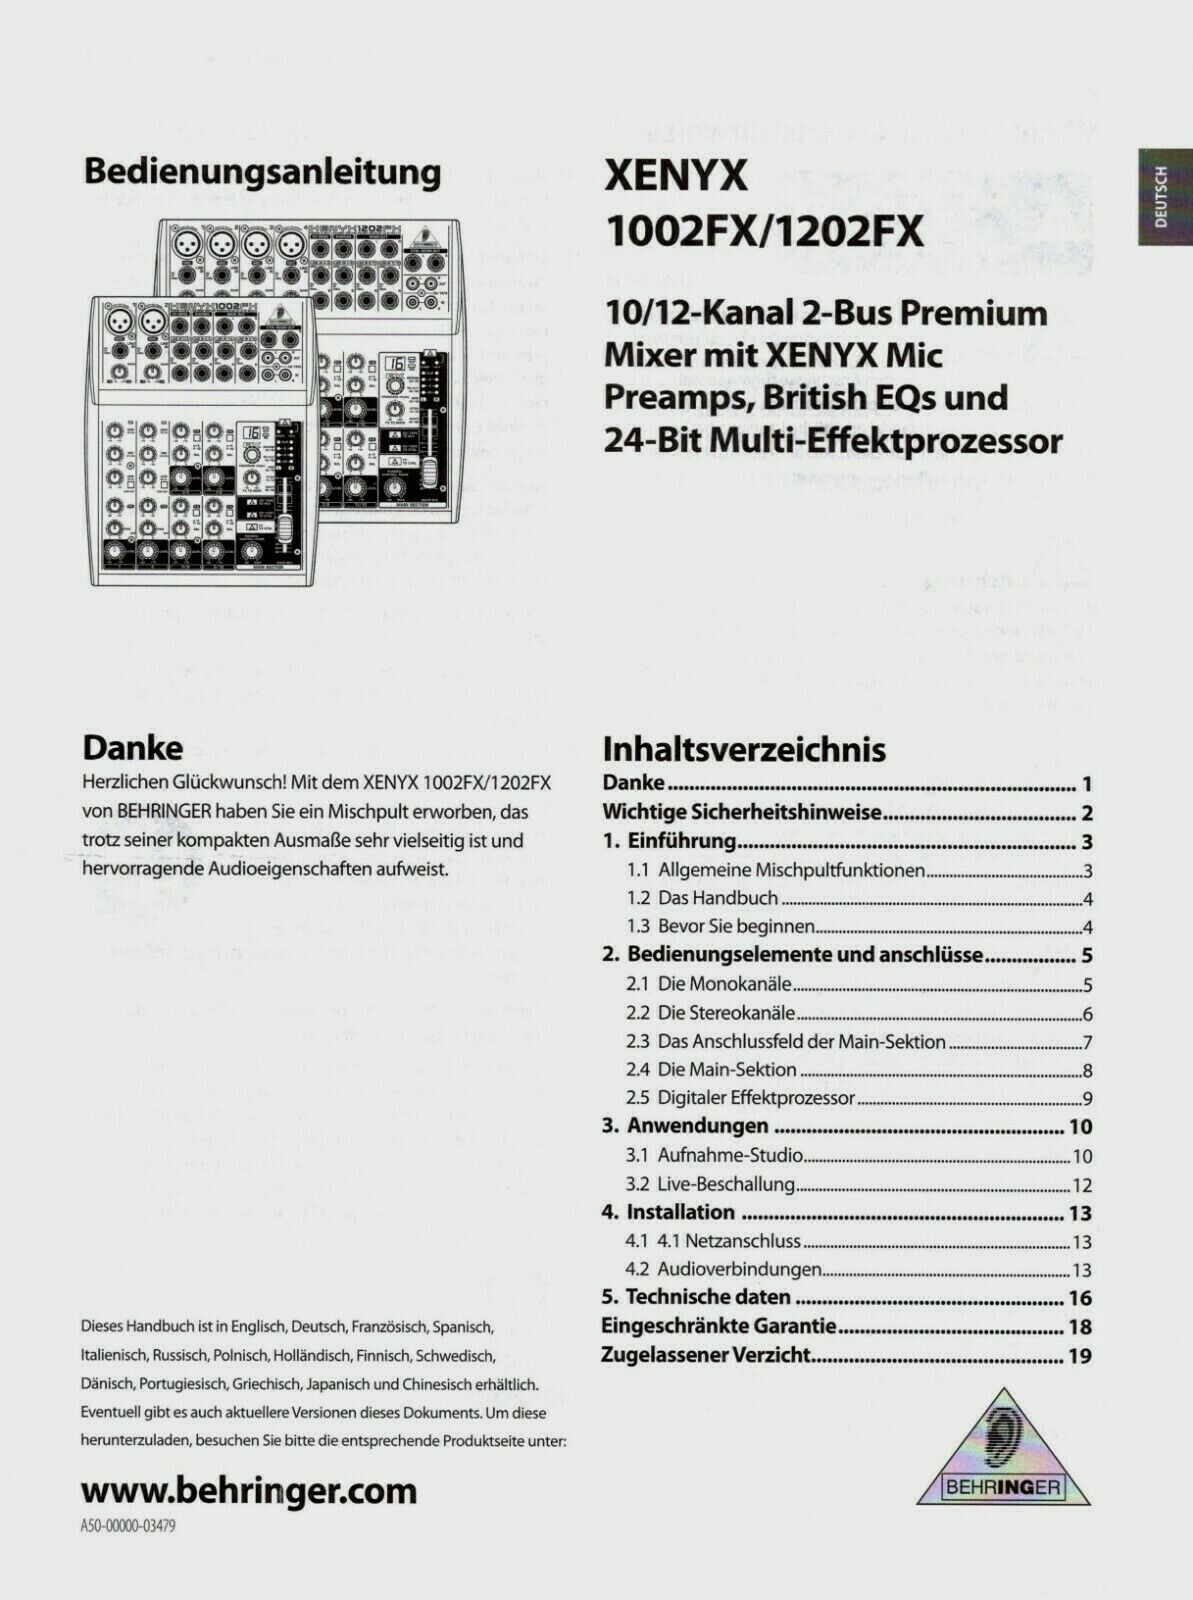 Instrukcja obsługi # Behringer # Konsole miksujące Xenyx # niemiecki # 19 stron